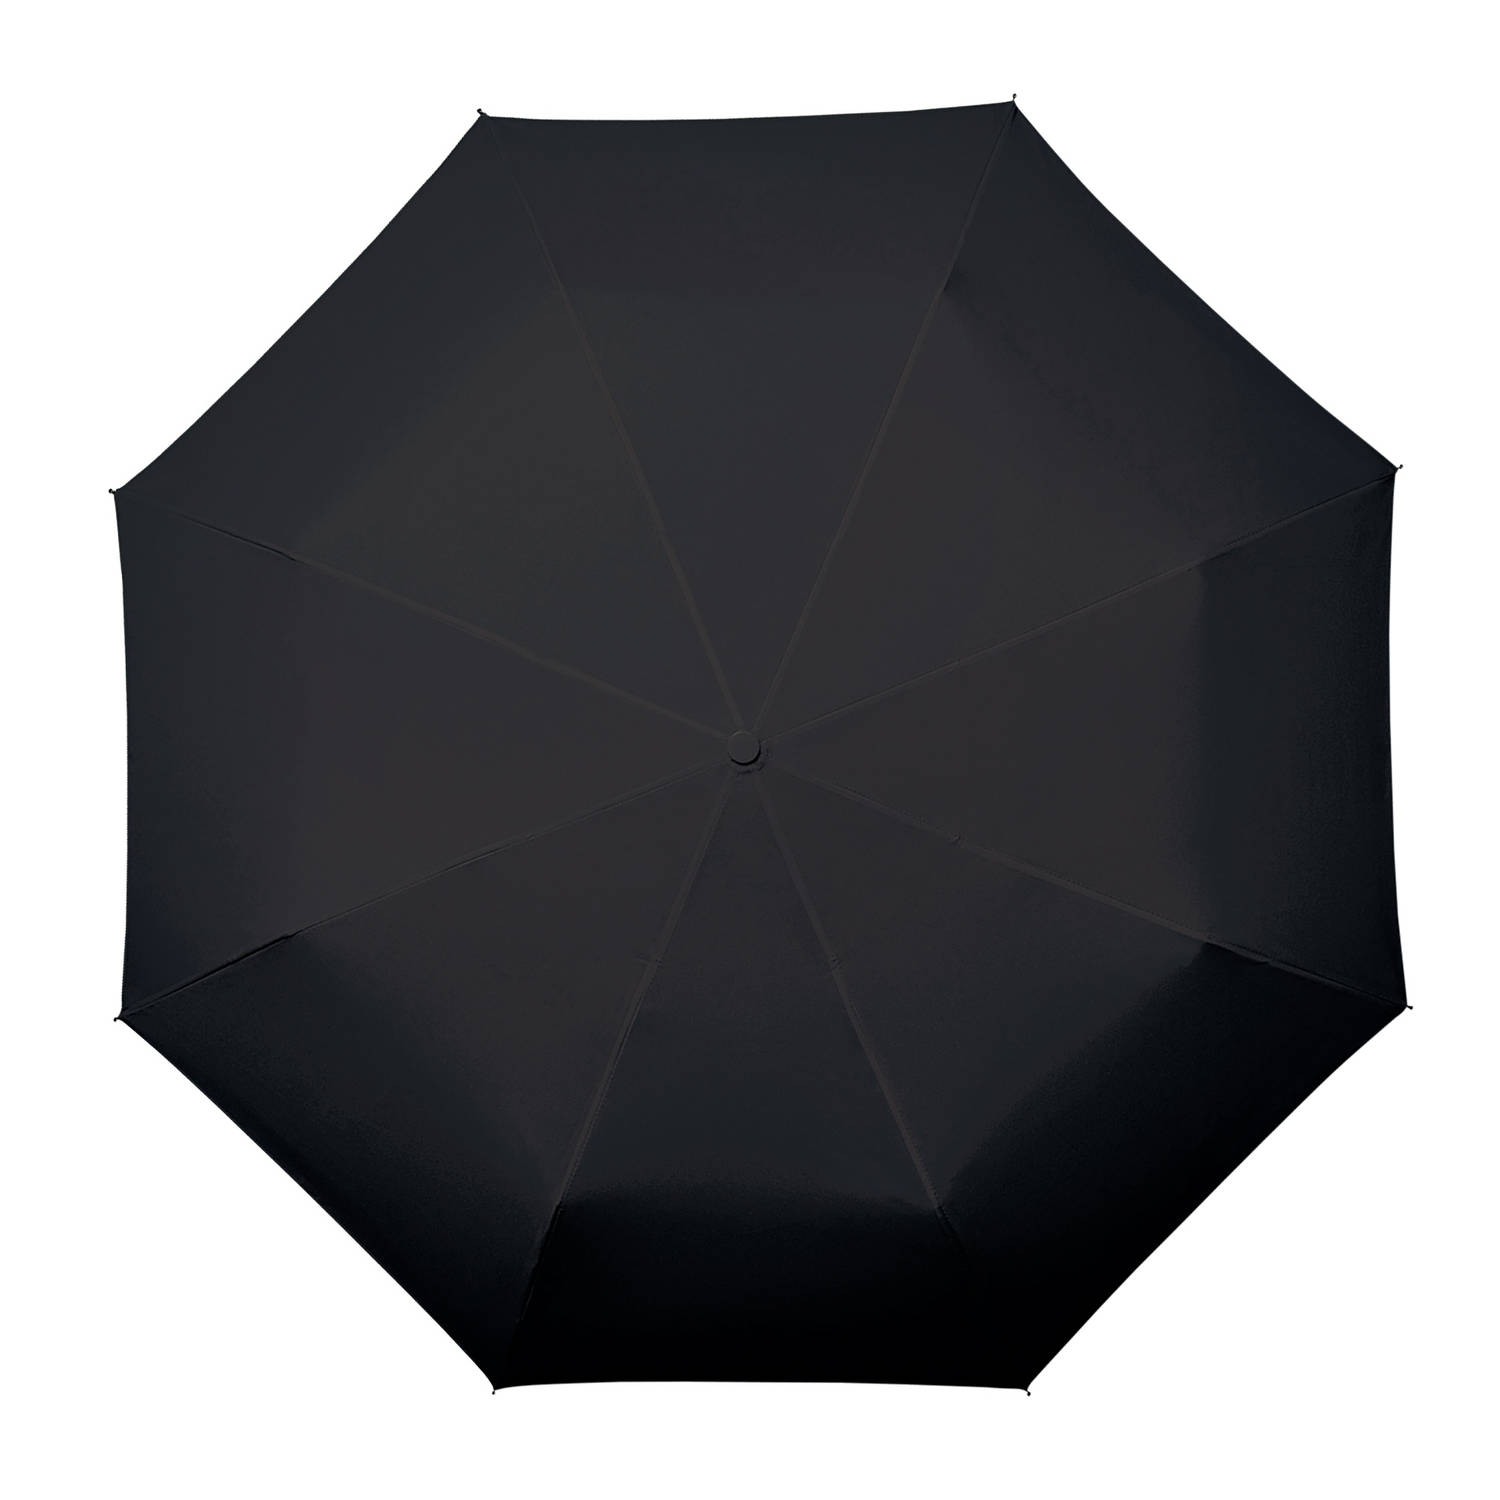 Emuleren markering Brutaal Impliva paraplu miniMAX auto open en close 100 cm zwart | Blokker